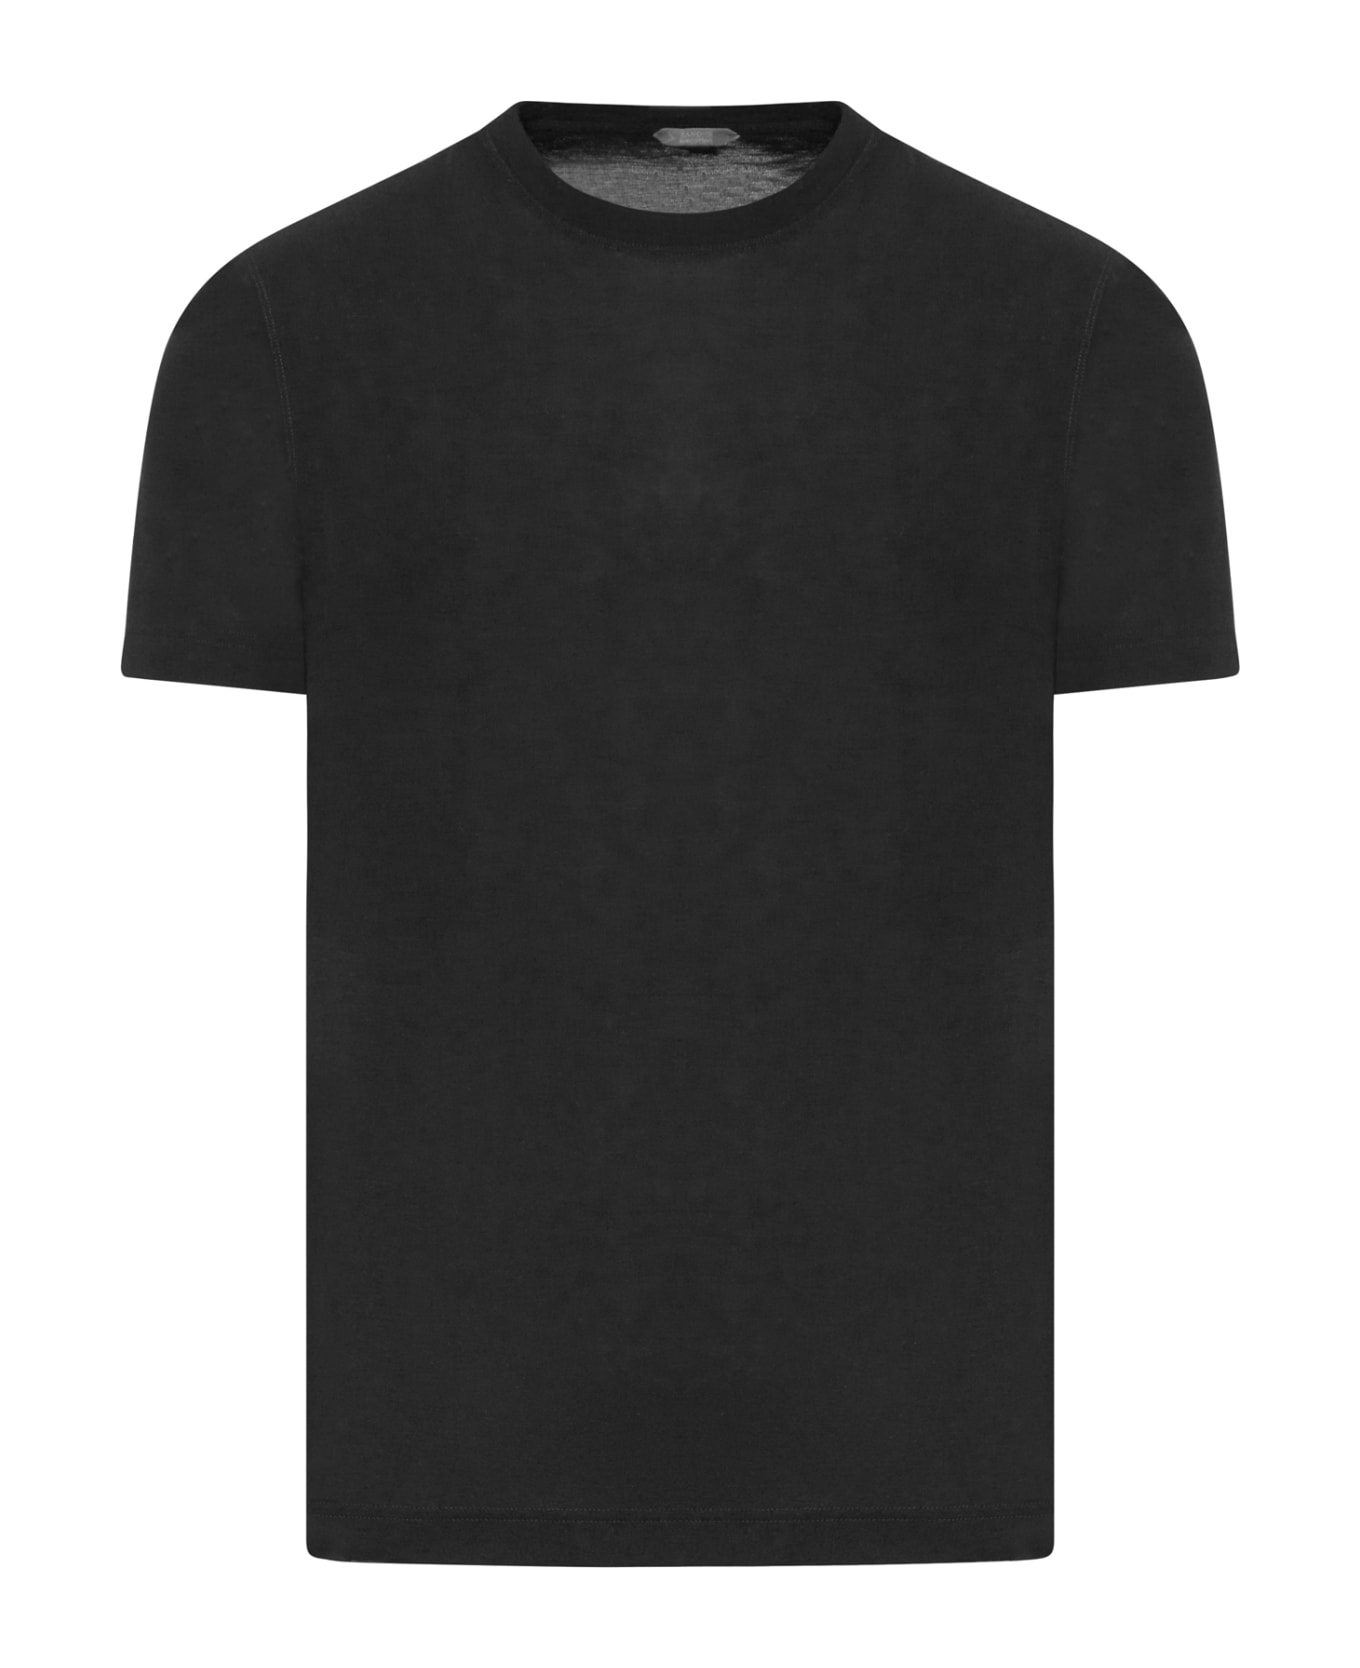 Zanone Tshirt Ss - Black